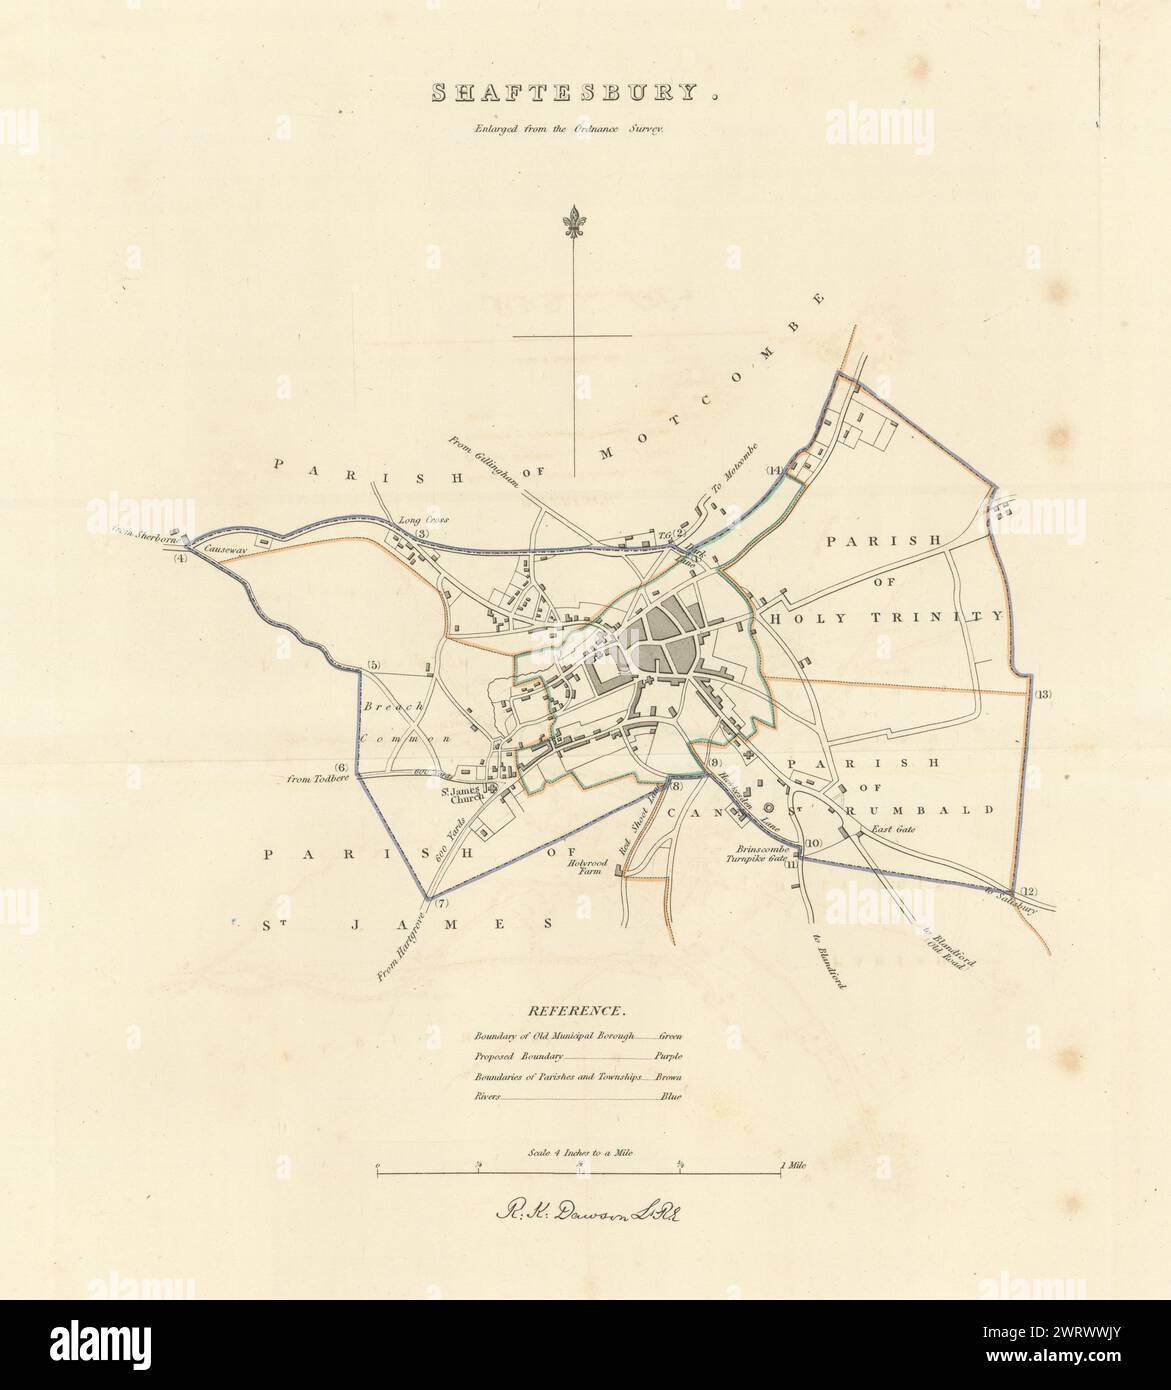 SHAFTESBURY Gemeinde/Stadt planen. Grenzkommission. Dorset. DAWSON 1837 Karte Stockfoto